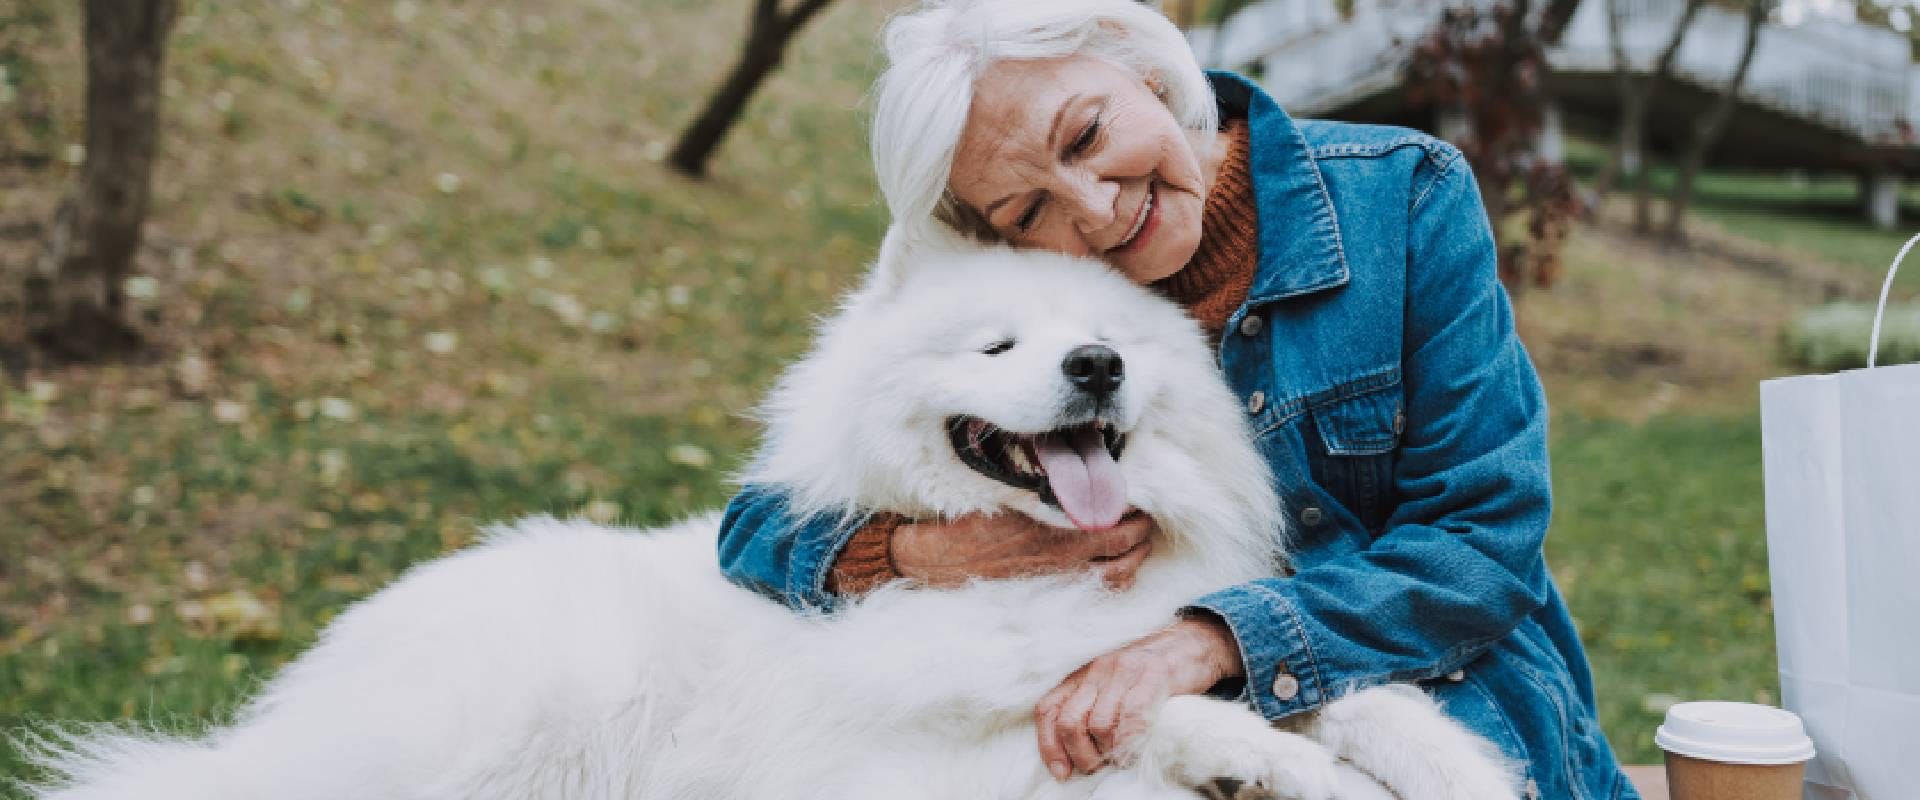 Woman cuddling a medium-sized white fluffy dog